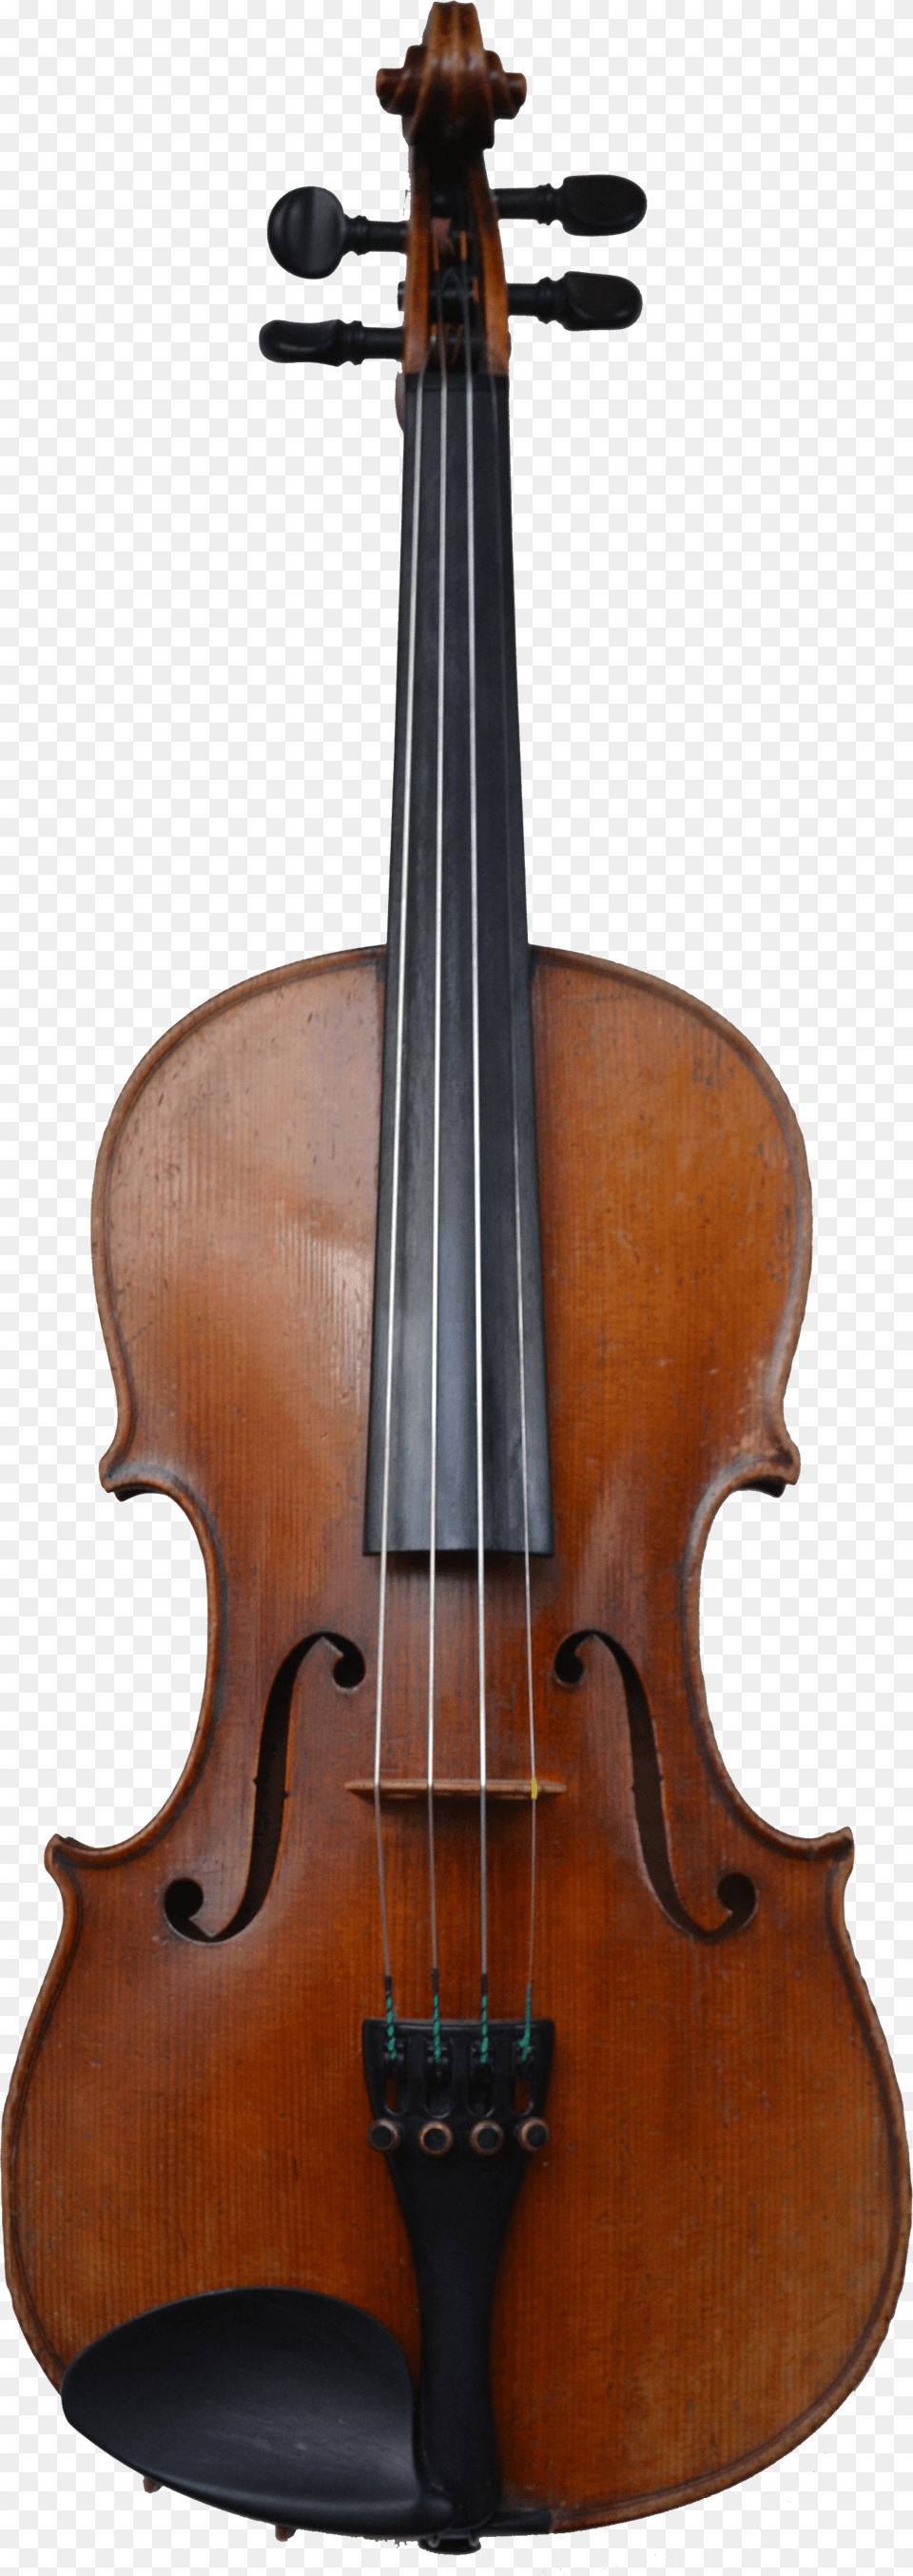 Violin Free Png